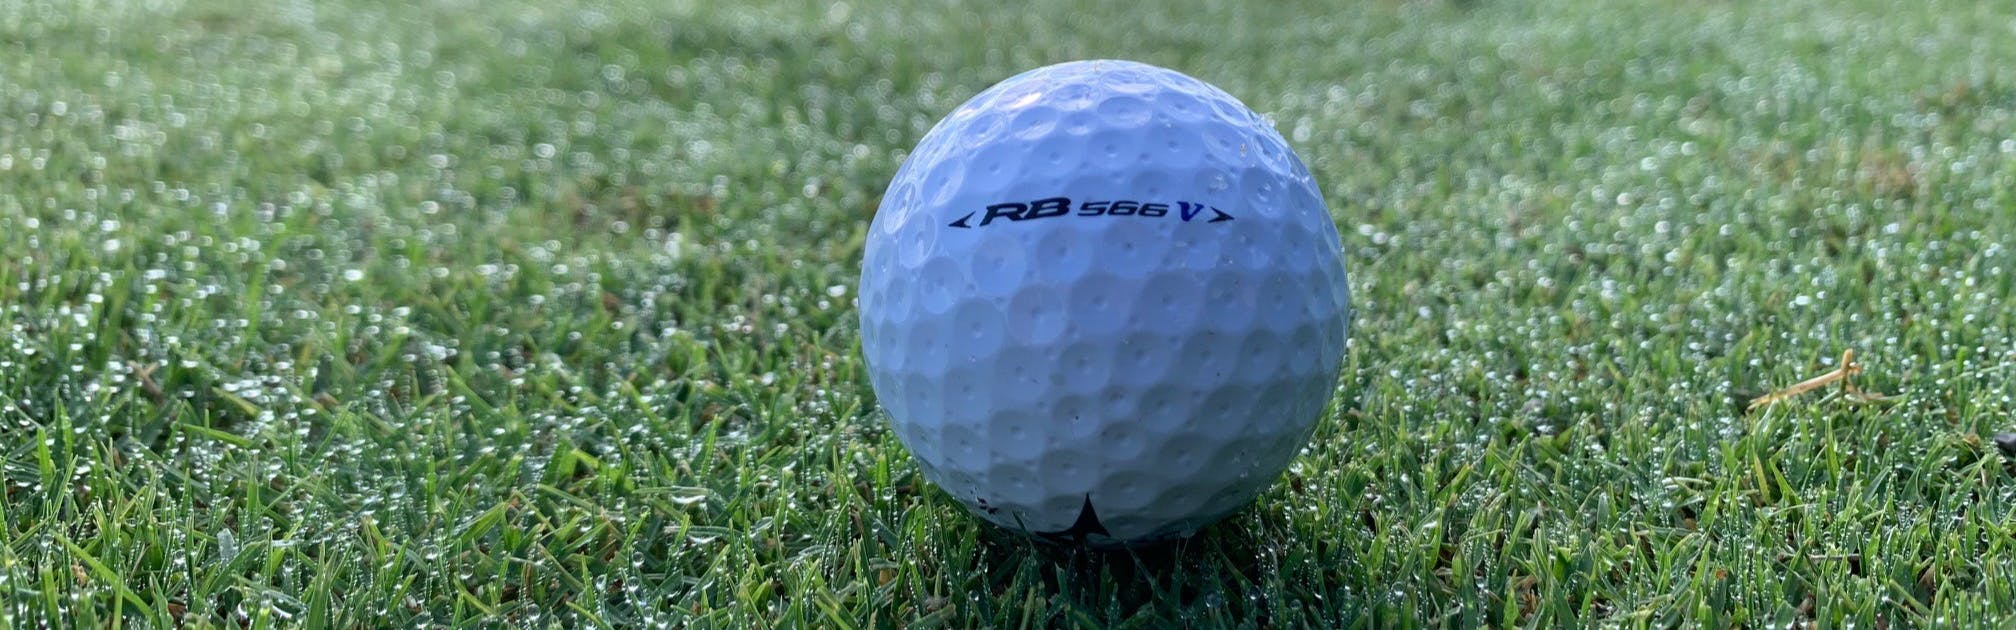 A Mizuno RB 566V Golf Ball lying on the grass.